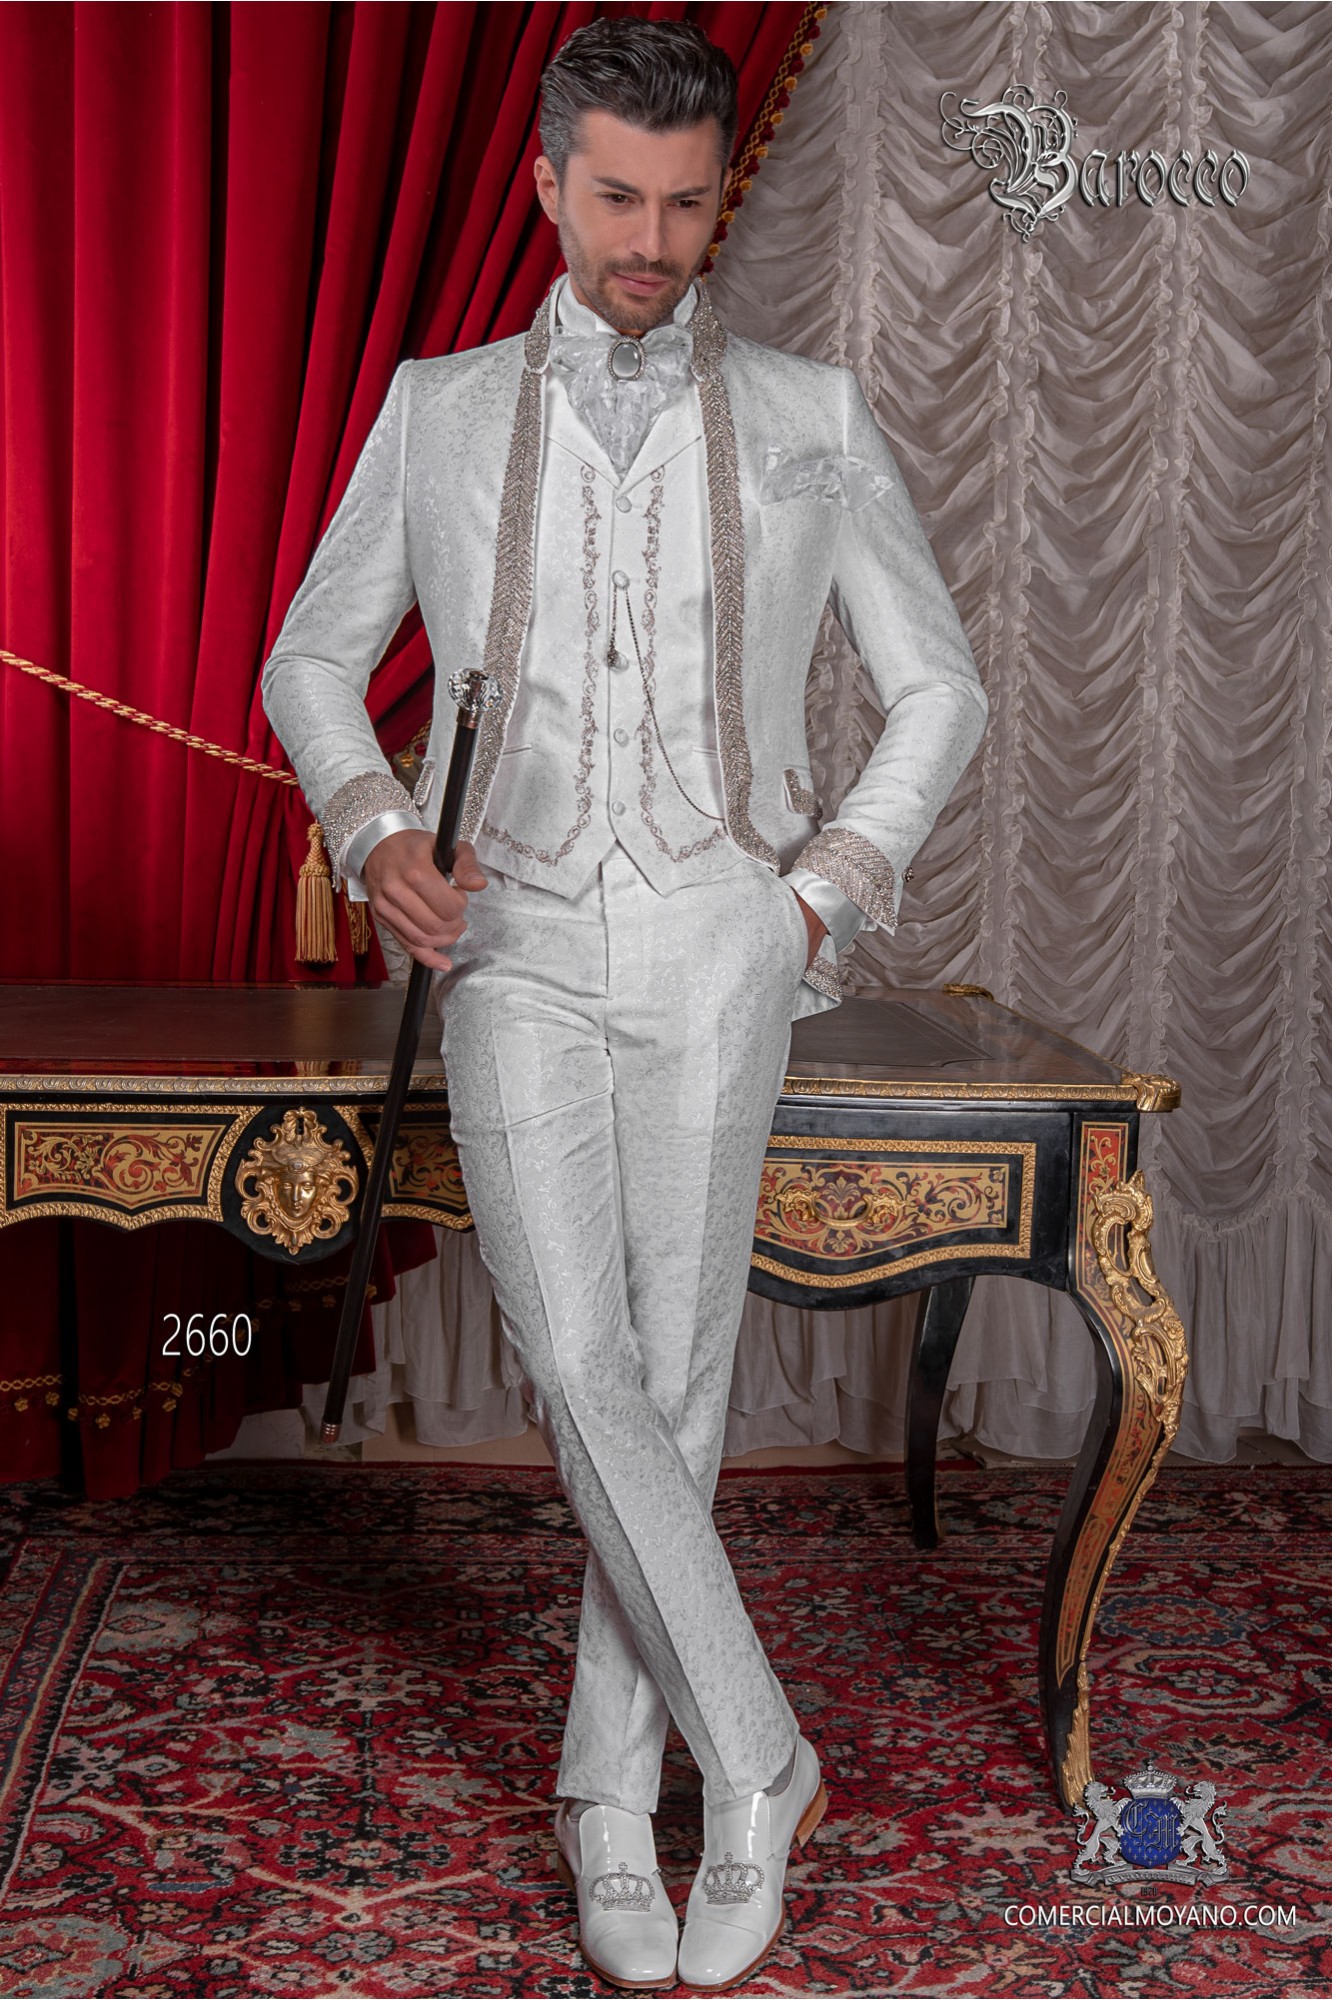 Baroque wedding suit, vintage frock coat in white floral brocade fabric, Mao collar with rhinestones model 2660 Mario Moyano